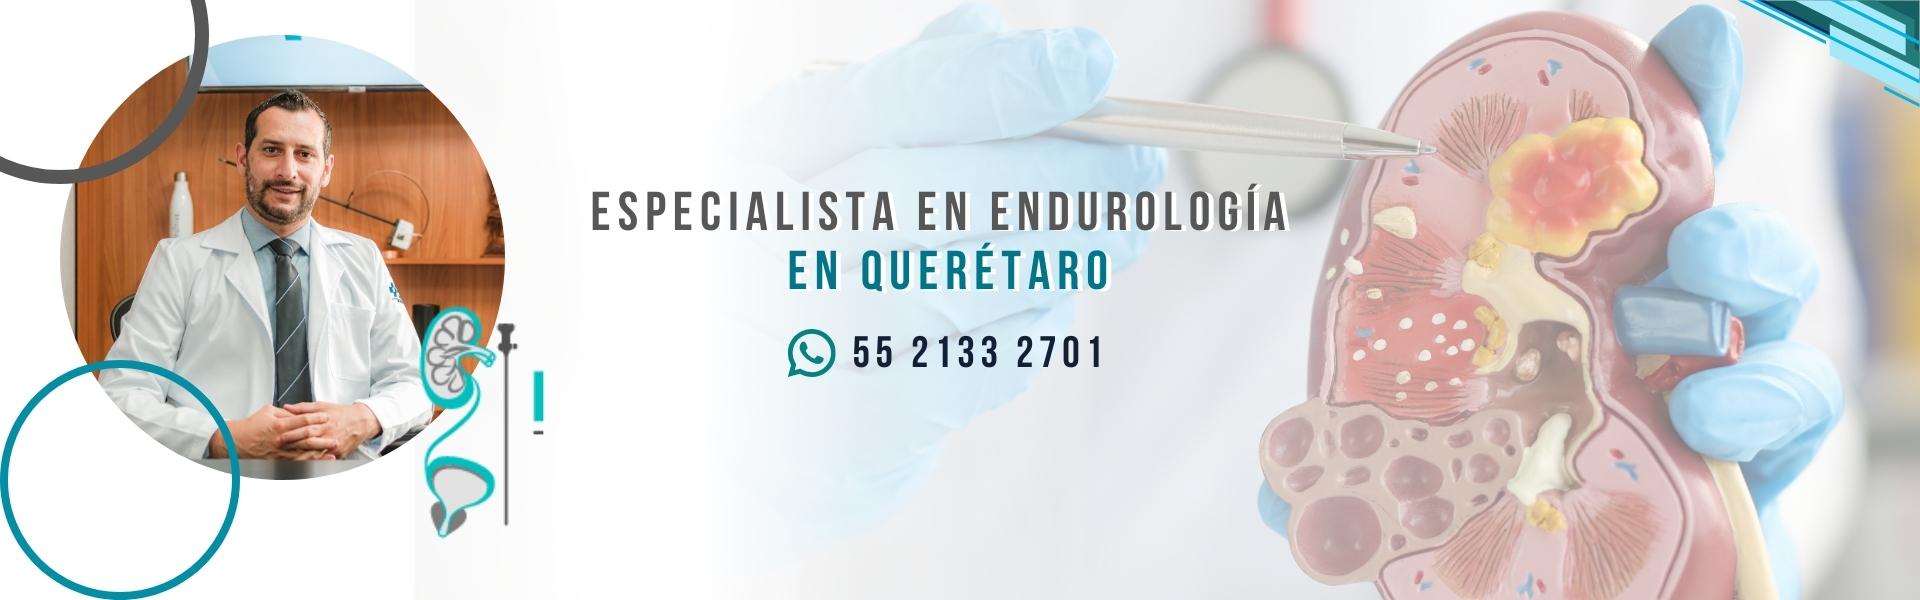 Urólogo especialista en Endourología